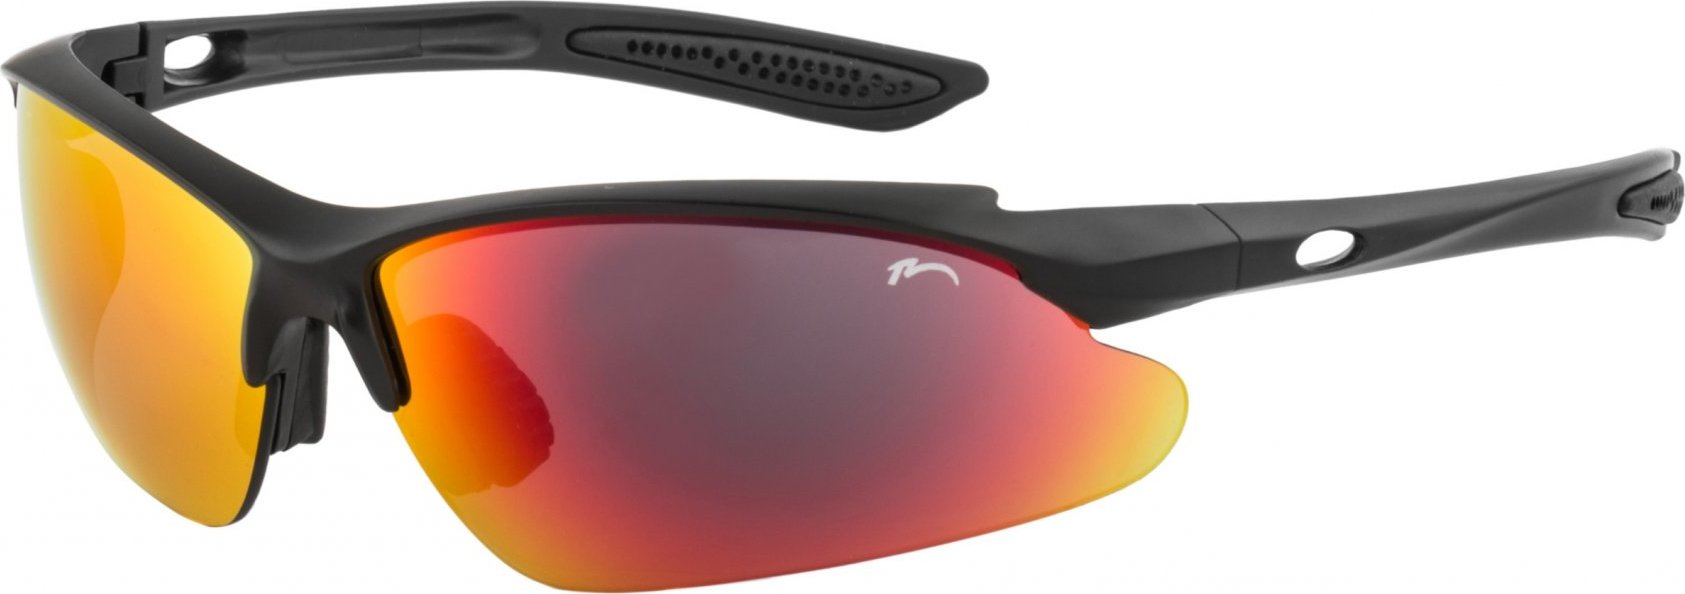 Sportovní sluneční brýle RELAX Mosera